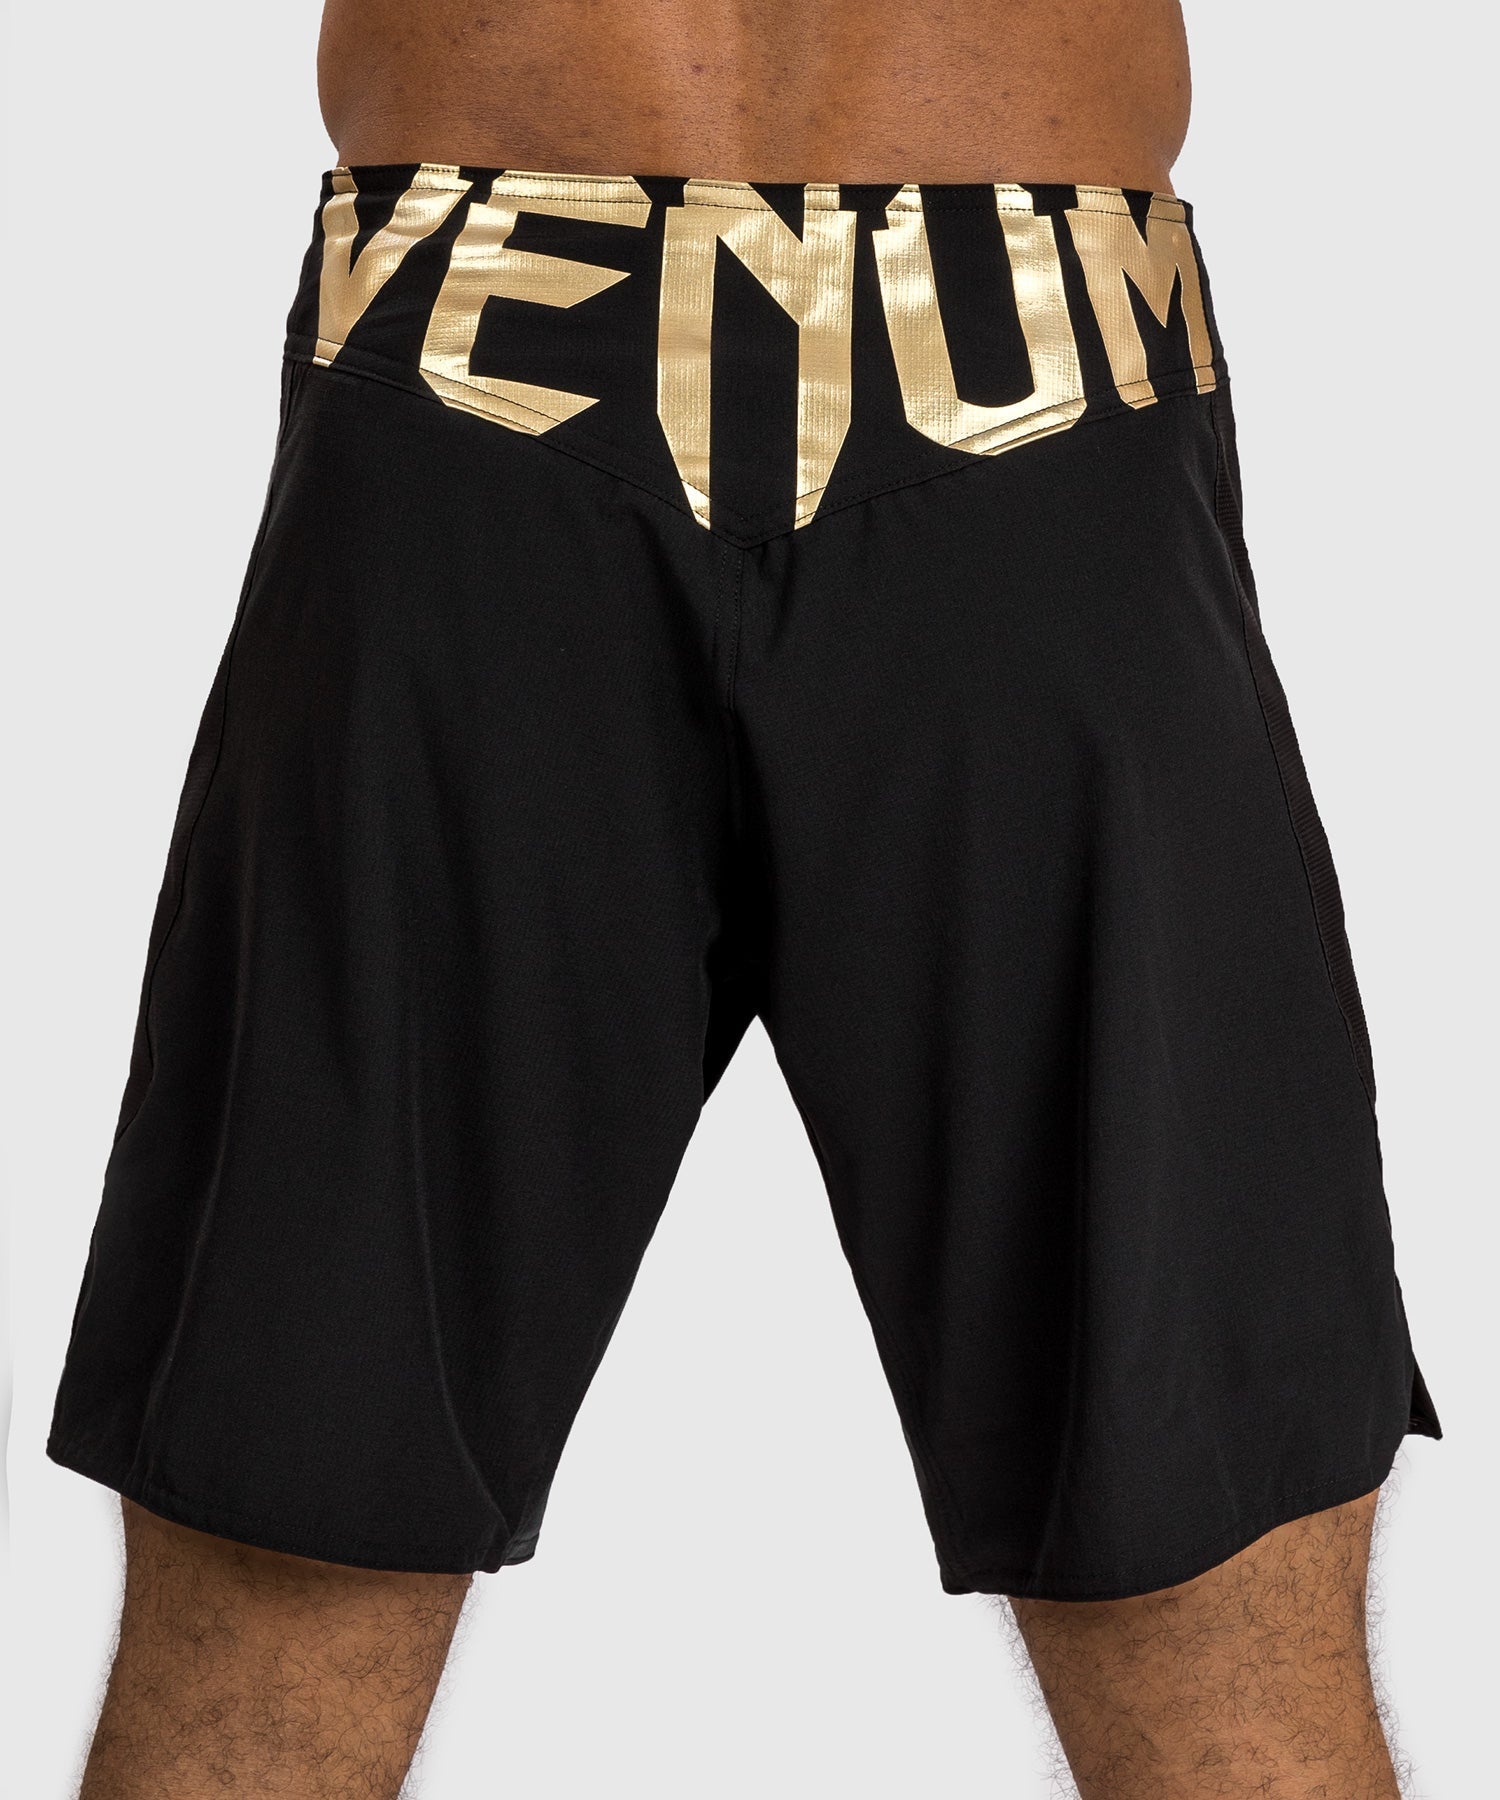 MMA Shorts Venum Licht 5.0